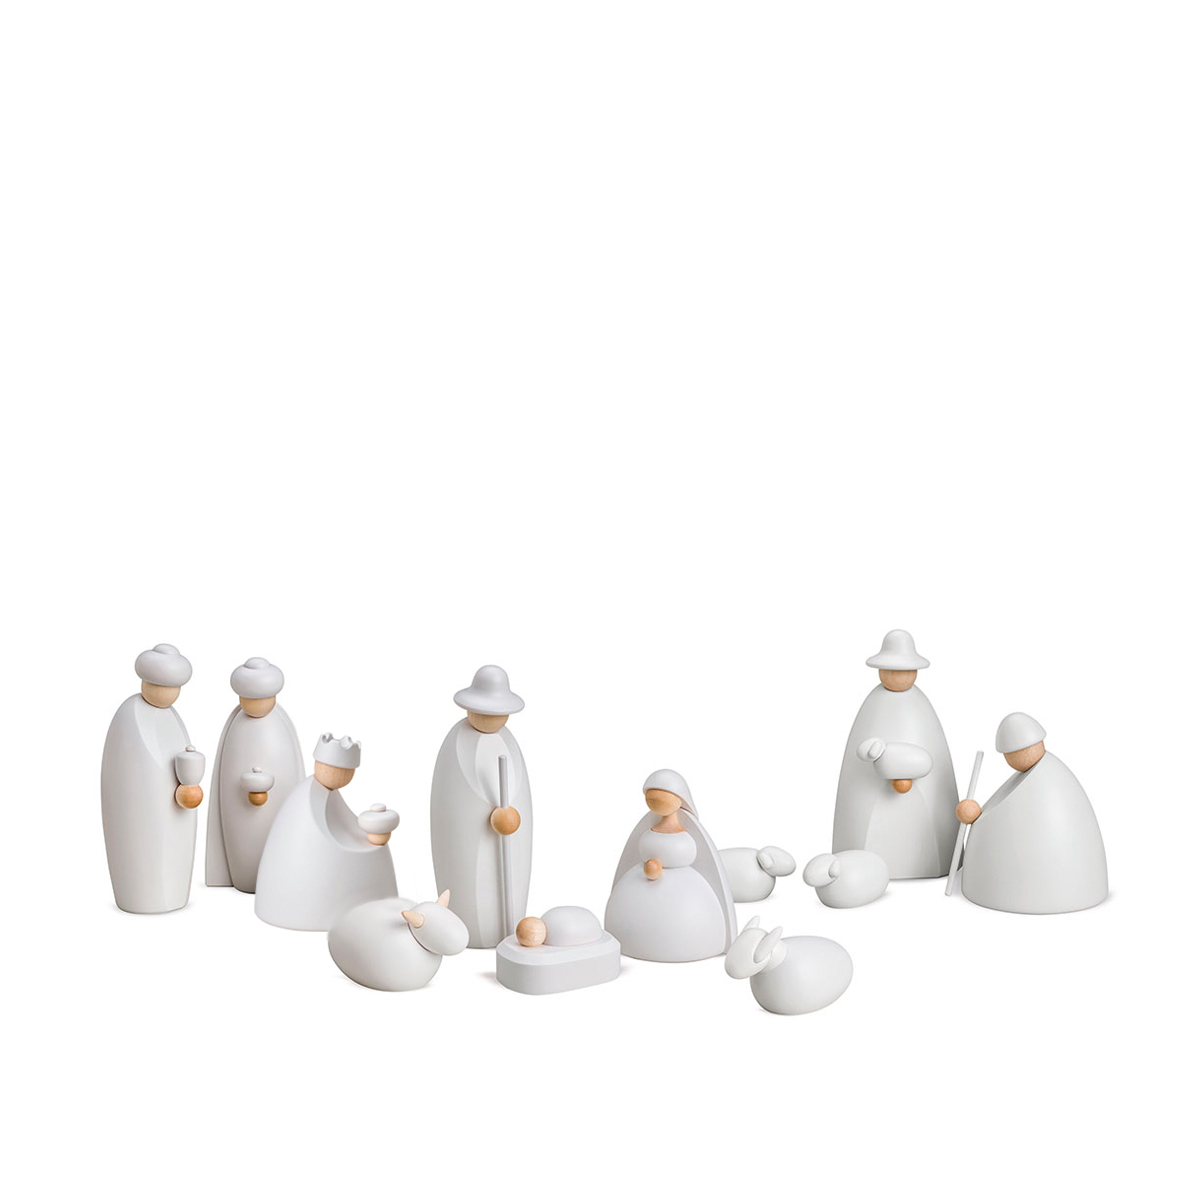 Crib figures, 12-piece set, small, white